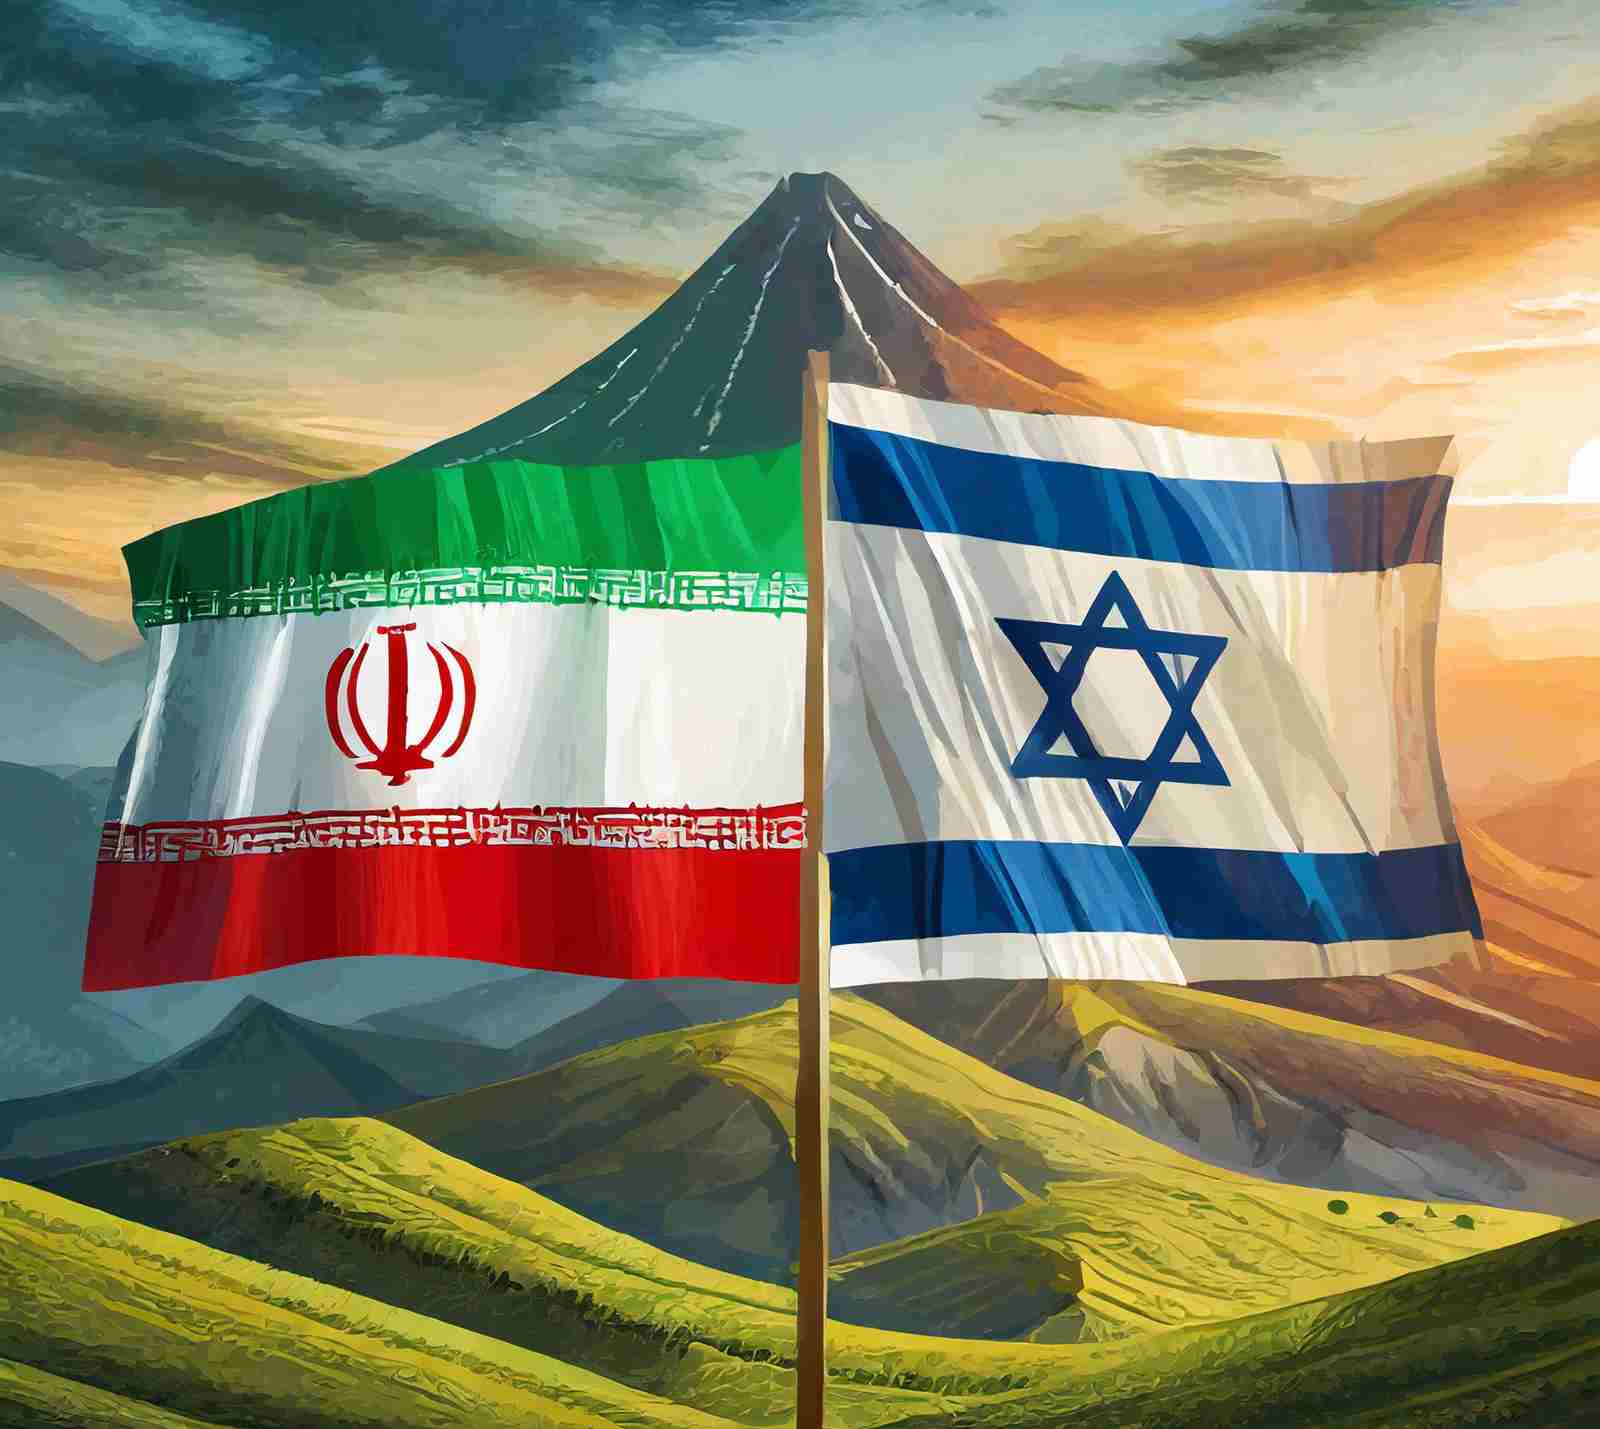 Alerte mondiale : Ces pays conseillent l’évacuation face à une tension imminente entre l’Iran et Israël